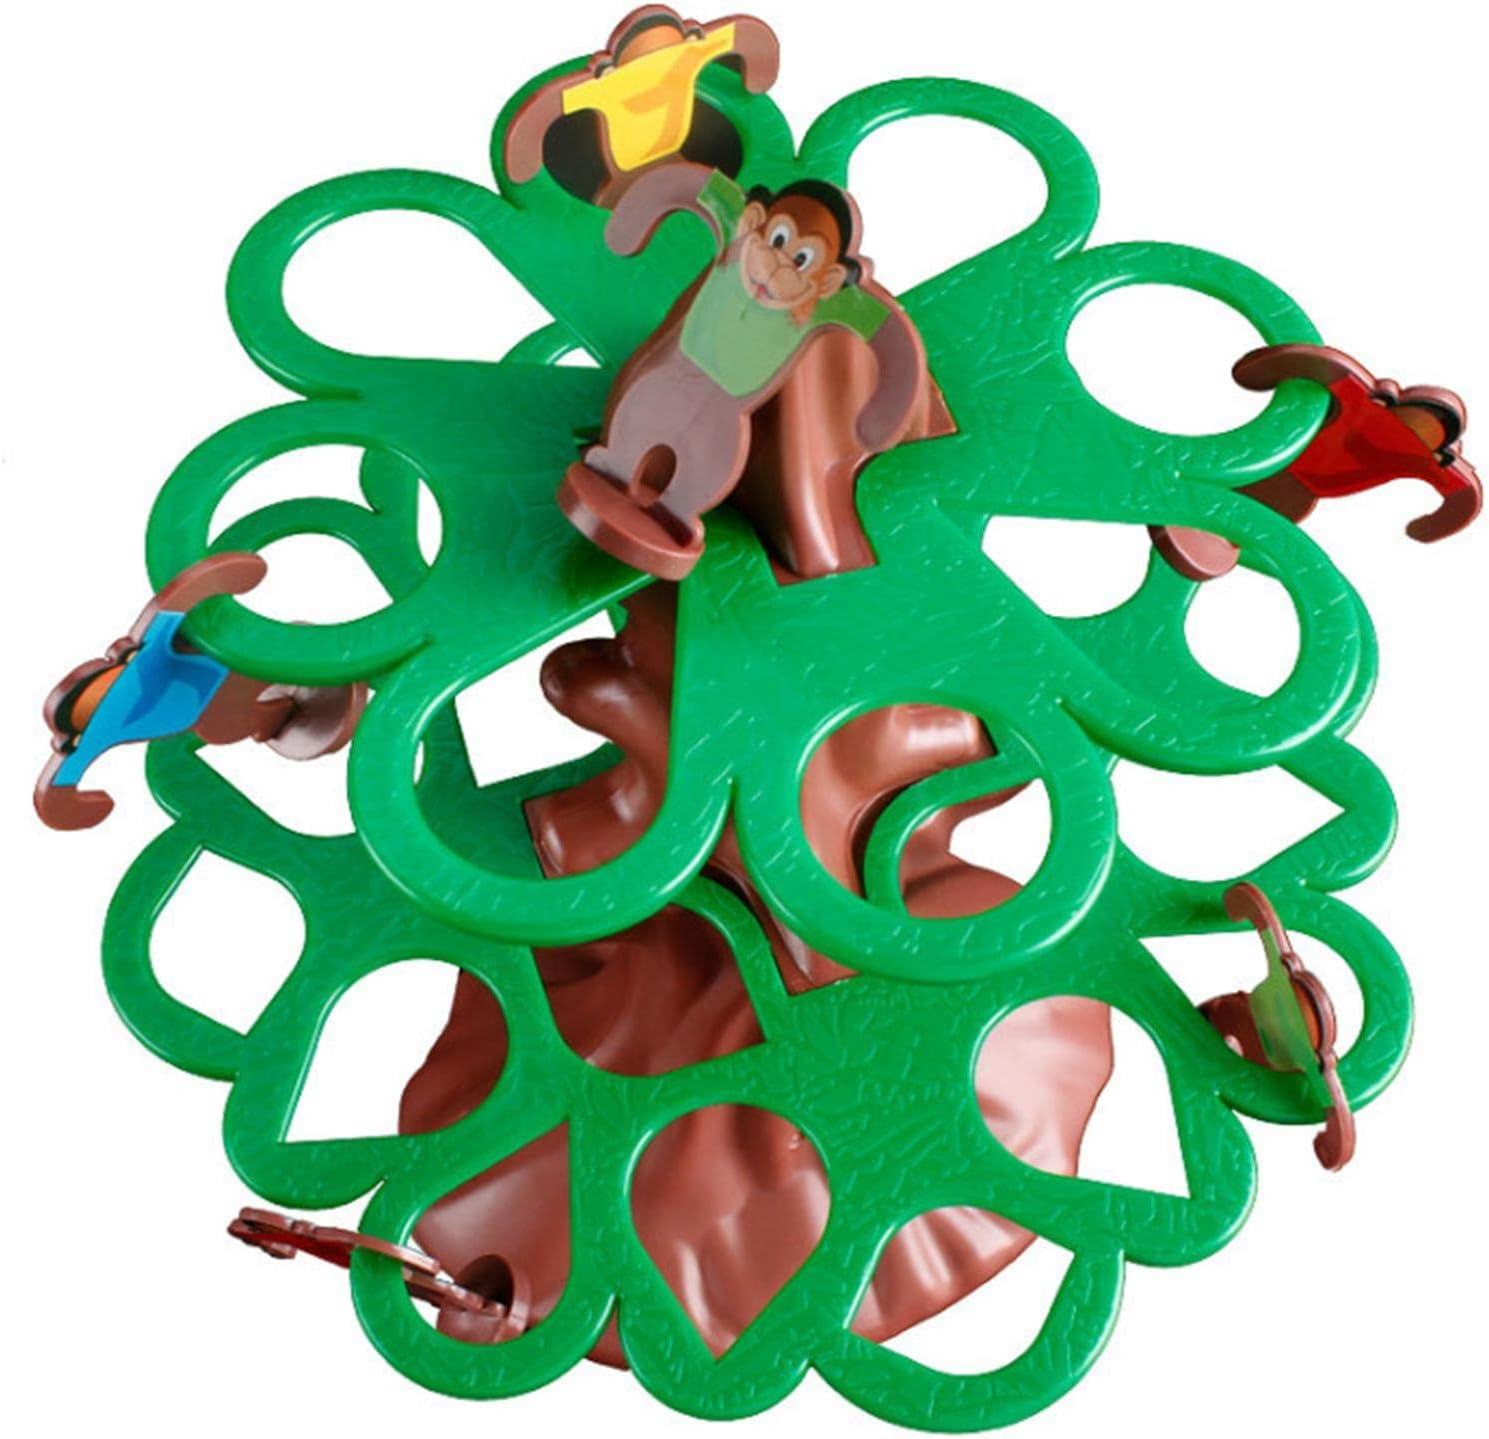 Jogo Pula Macaco Infantil até 4 Jogadores Clássico Brinquedo - 5